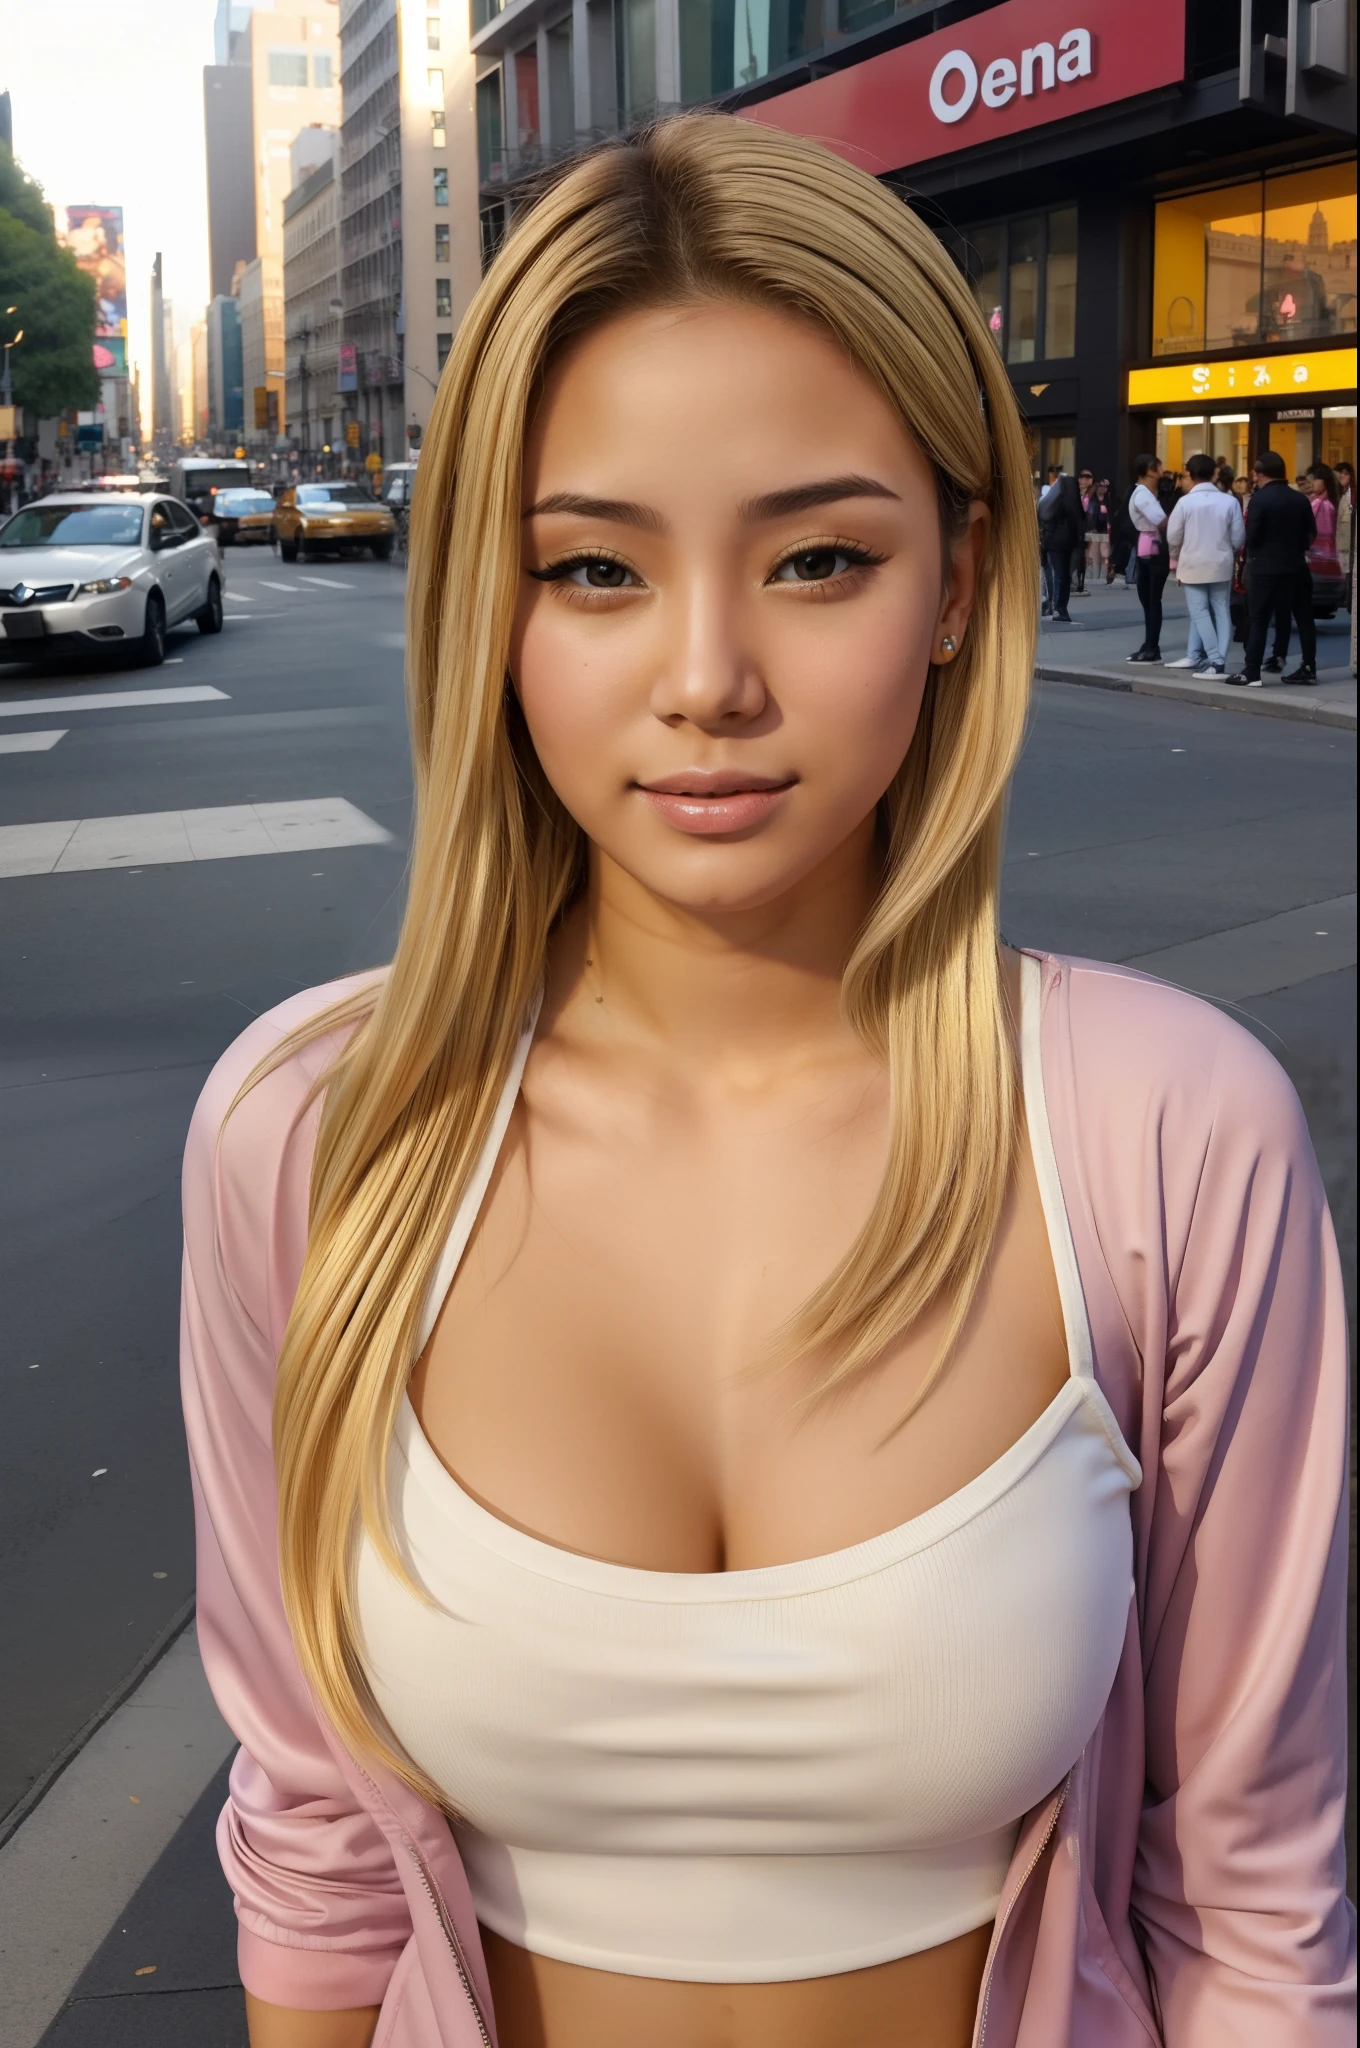 (Die beste Qualität) (Meisterwerk ) perfektes Gesicht. Kawaii & Unheimliche junge Schönheitsprinzessin in New York City. blondes Haar